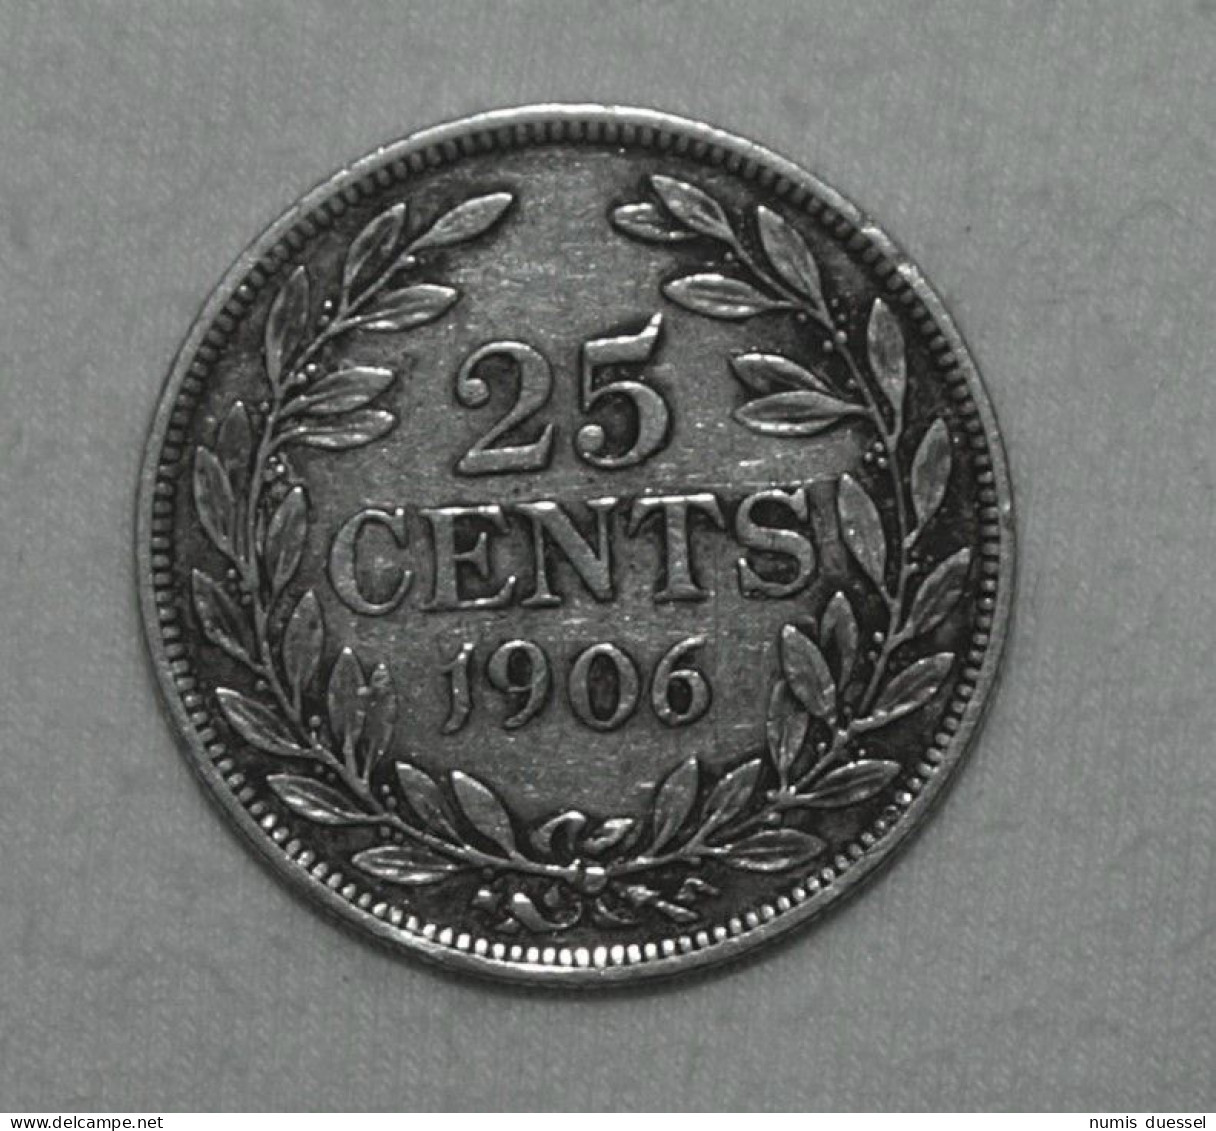 Silber/Silver Liberia Liberty Head, 1906 H, 25 Cents - Liberia